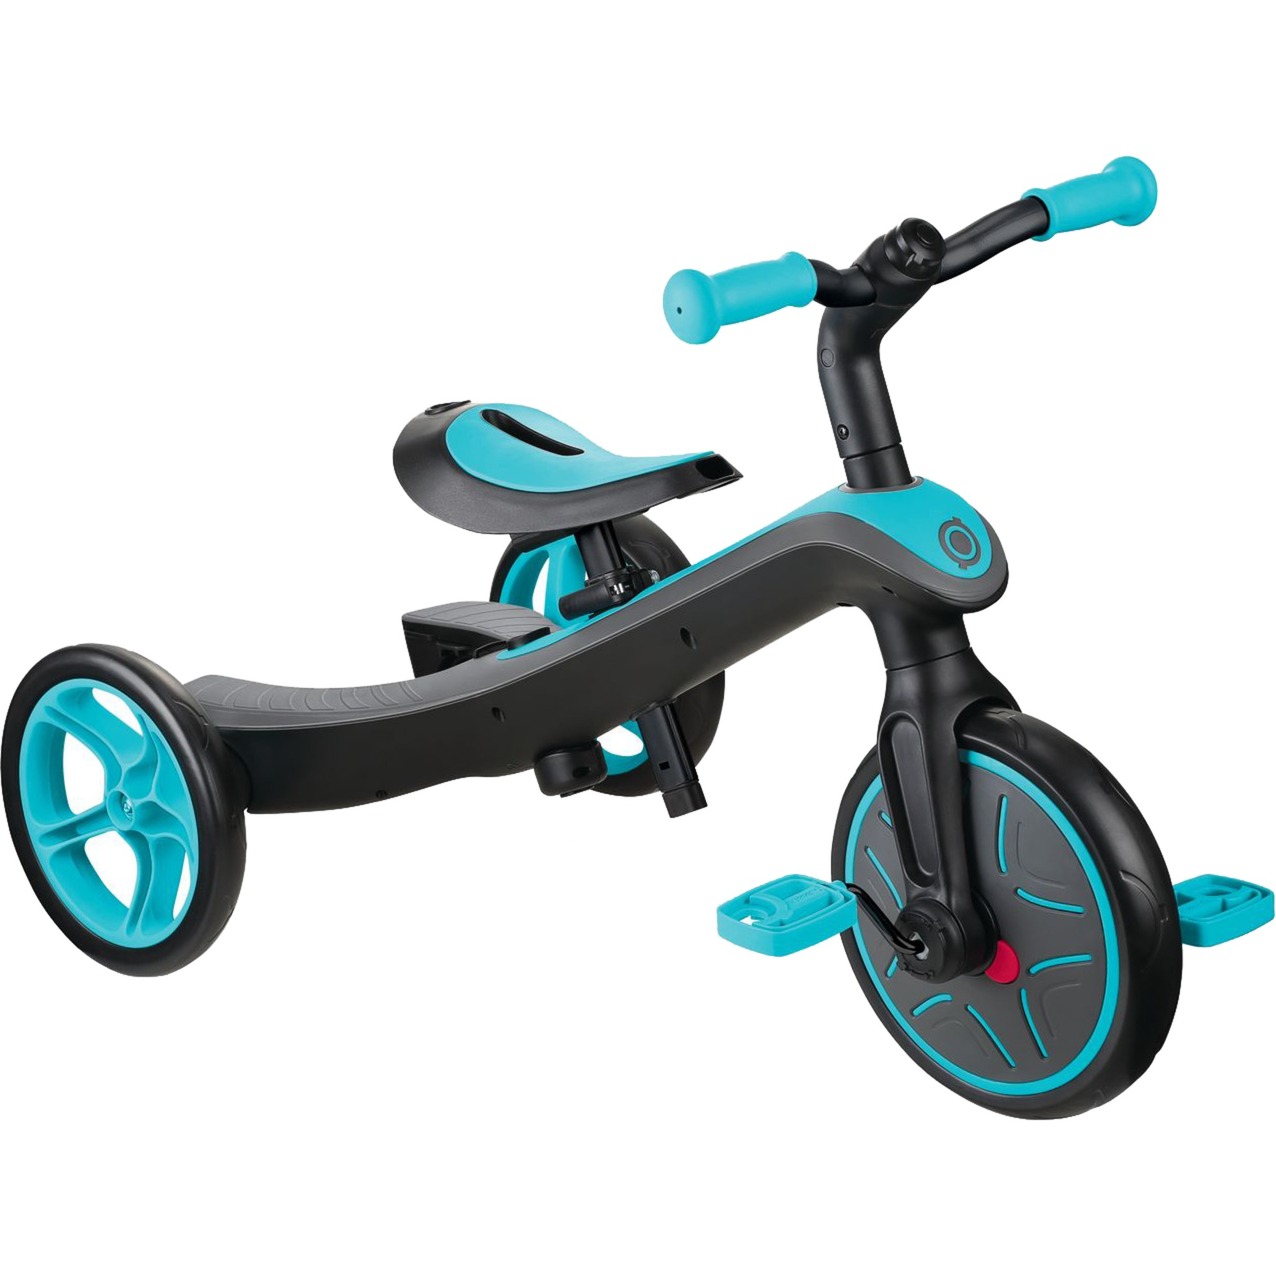 Image of Alternate - Dreirad Explorer 2 in 1, Kinderfahrzeug online einkaufen bei Alternate